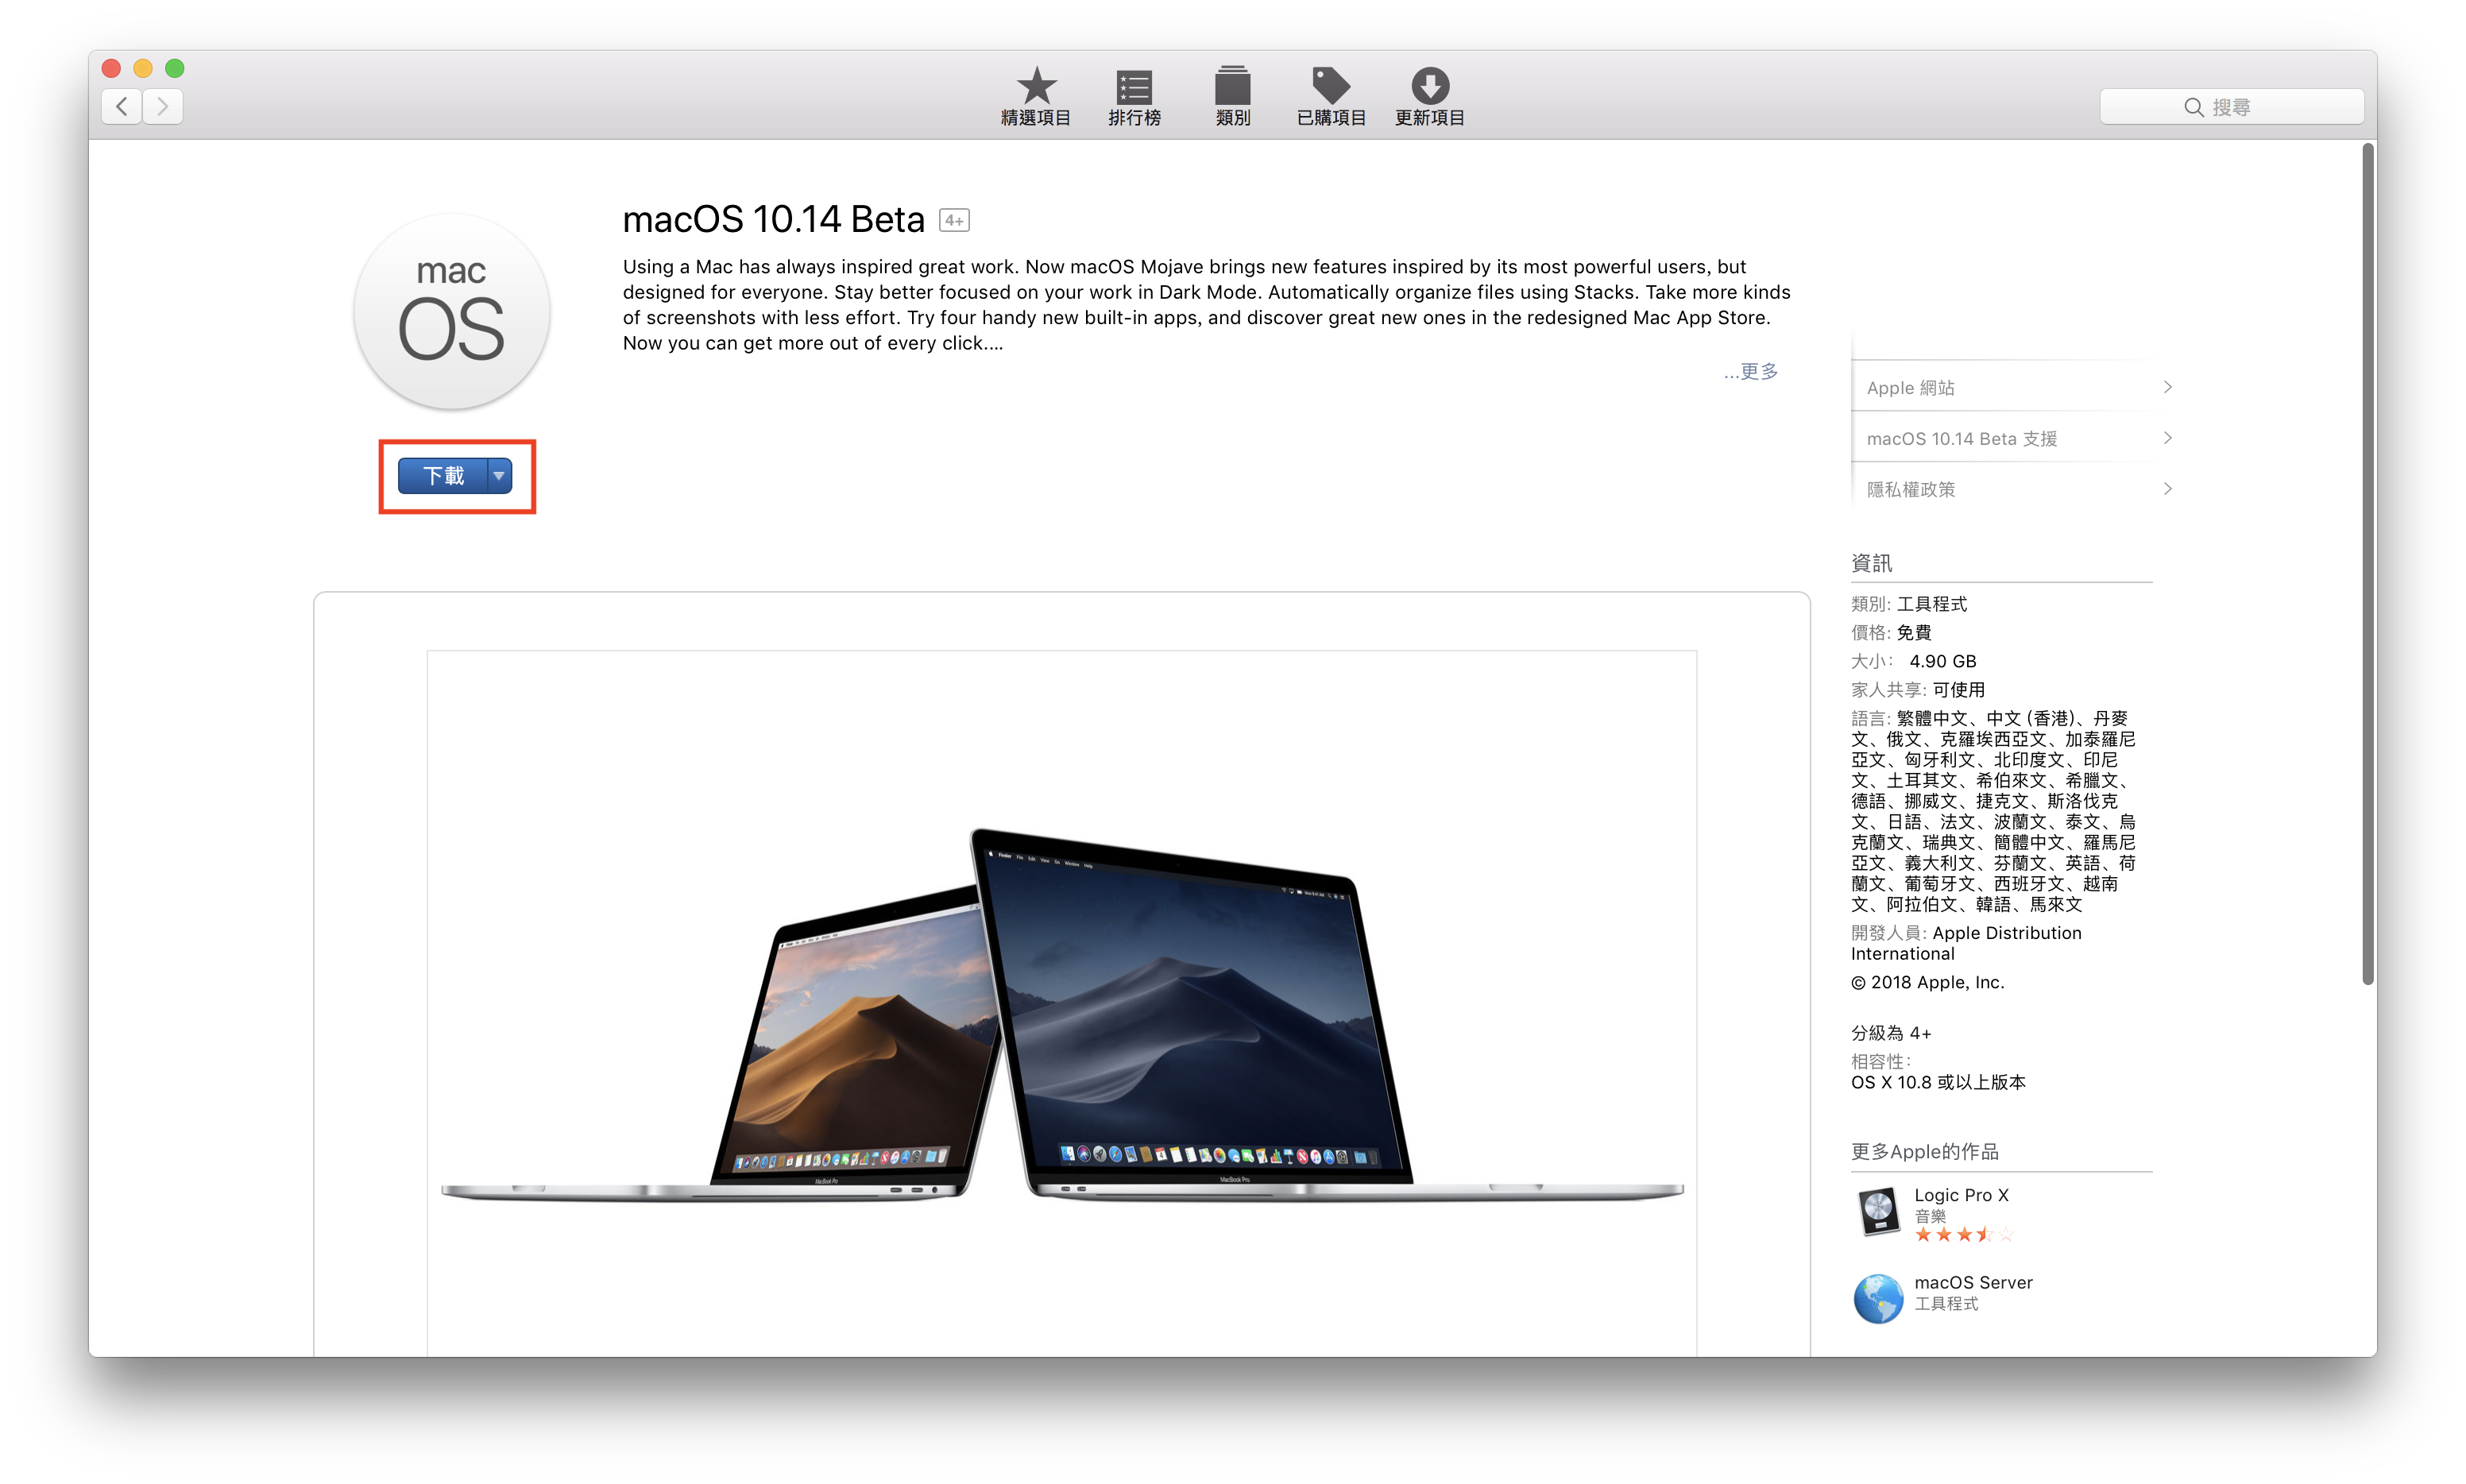 macOS 10.14 Beta 搶先升級 免開發者帳號升級教學 8